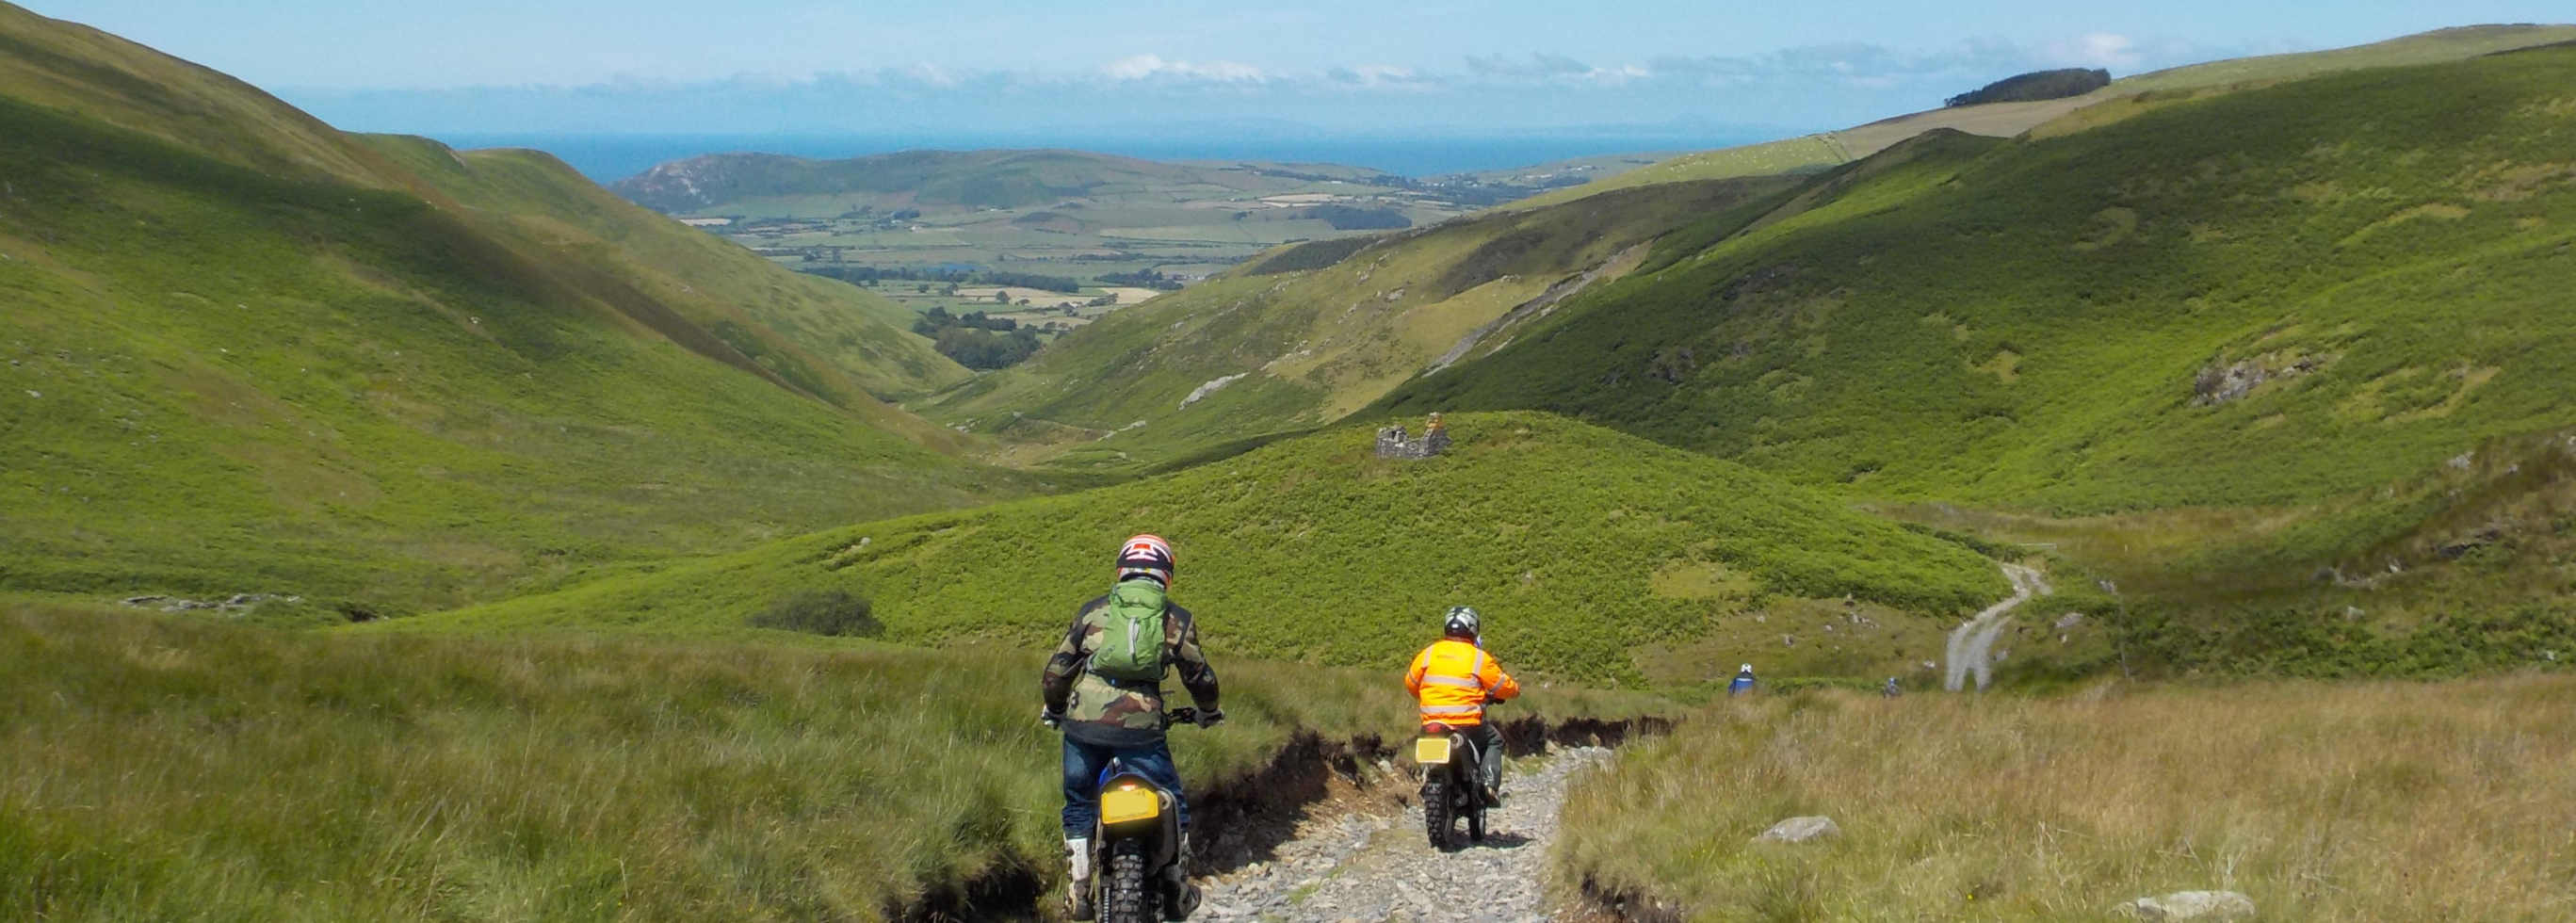 Scenic picture of trail rider near Aberdyfi